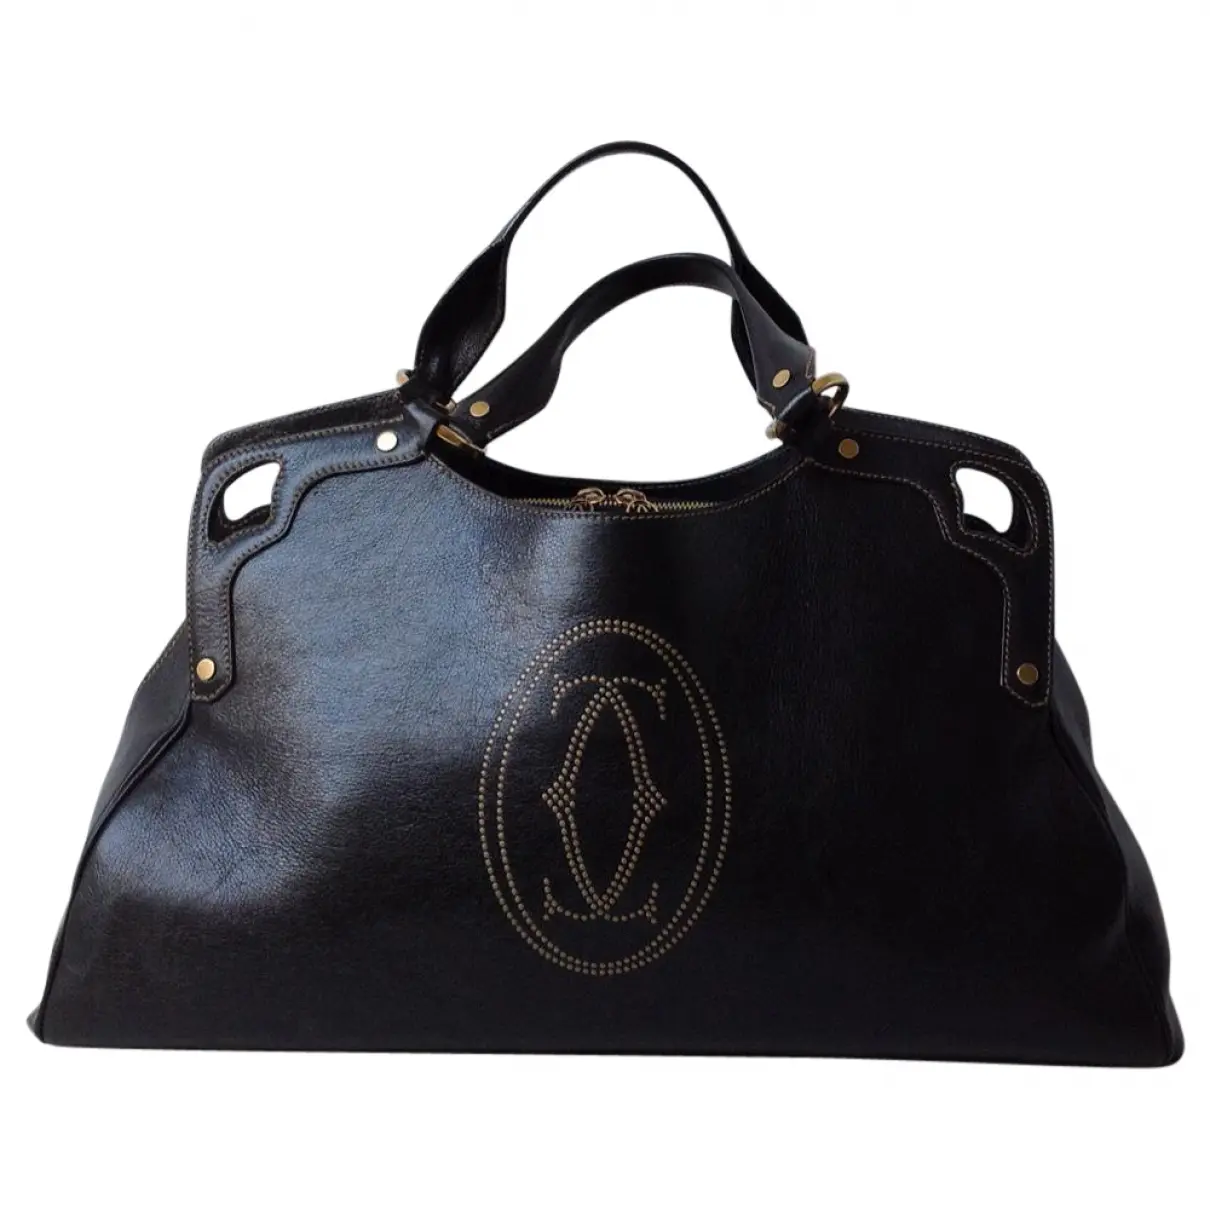 Black Leather Handbag Marcello Cartier